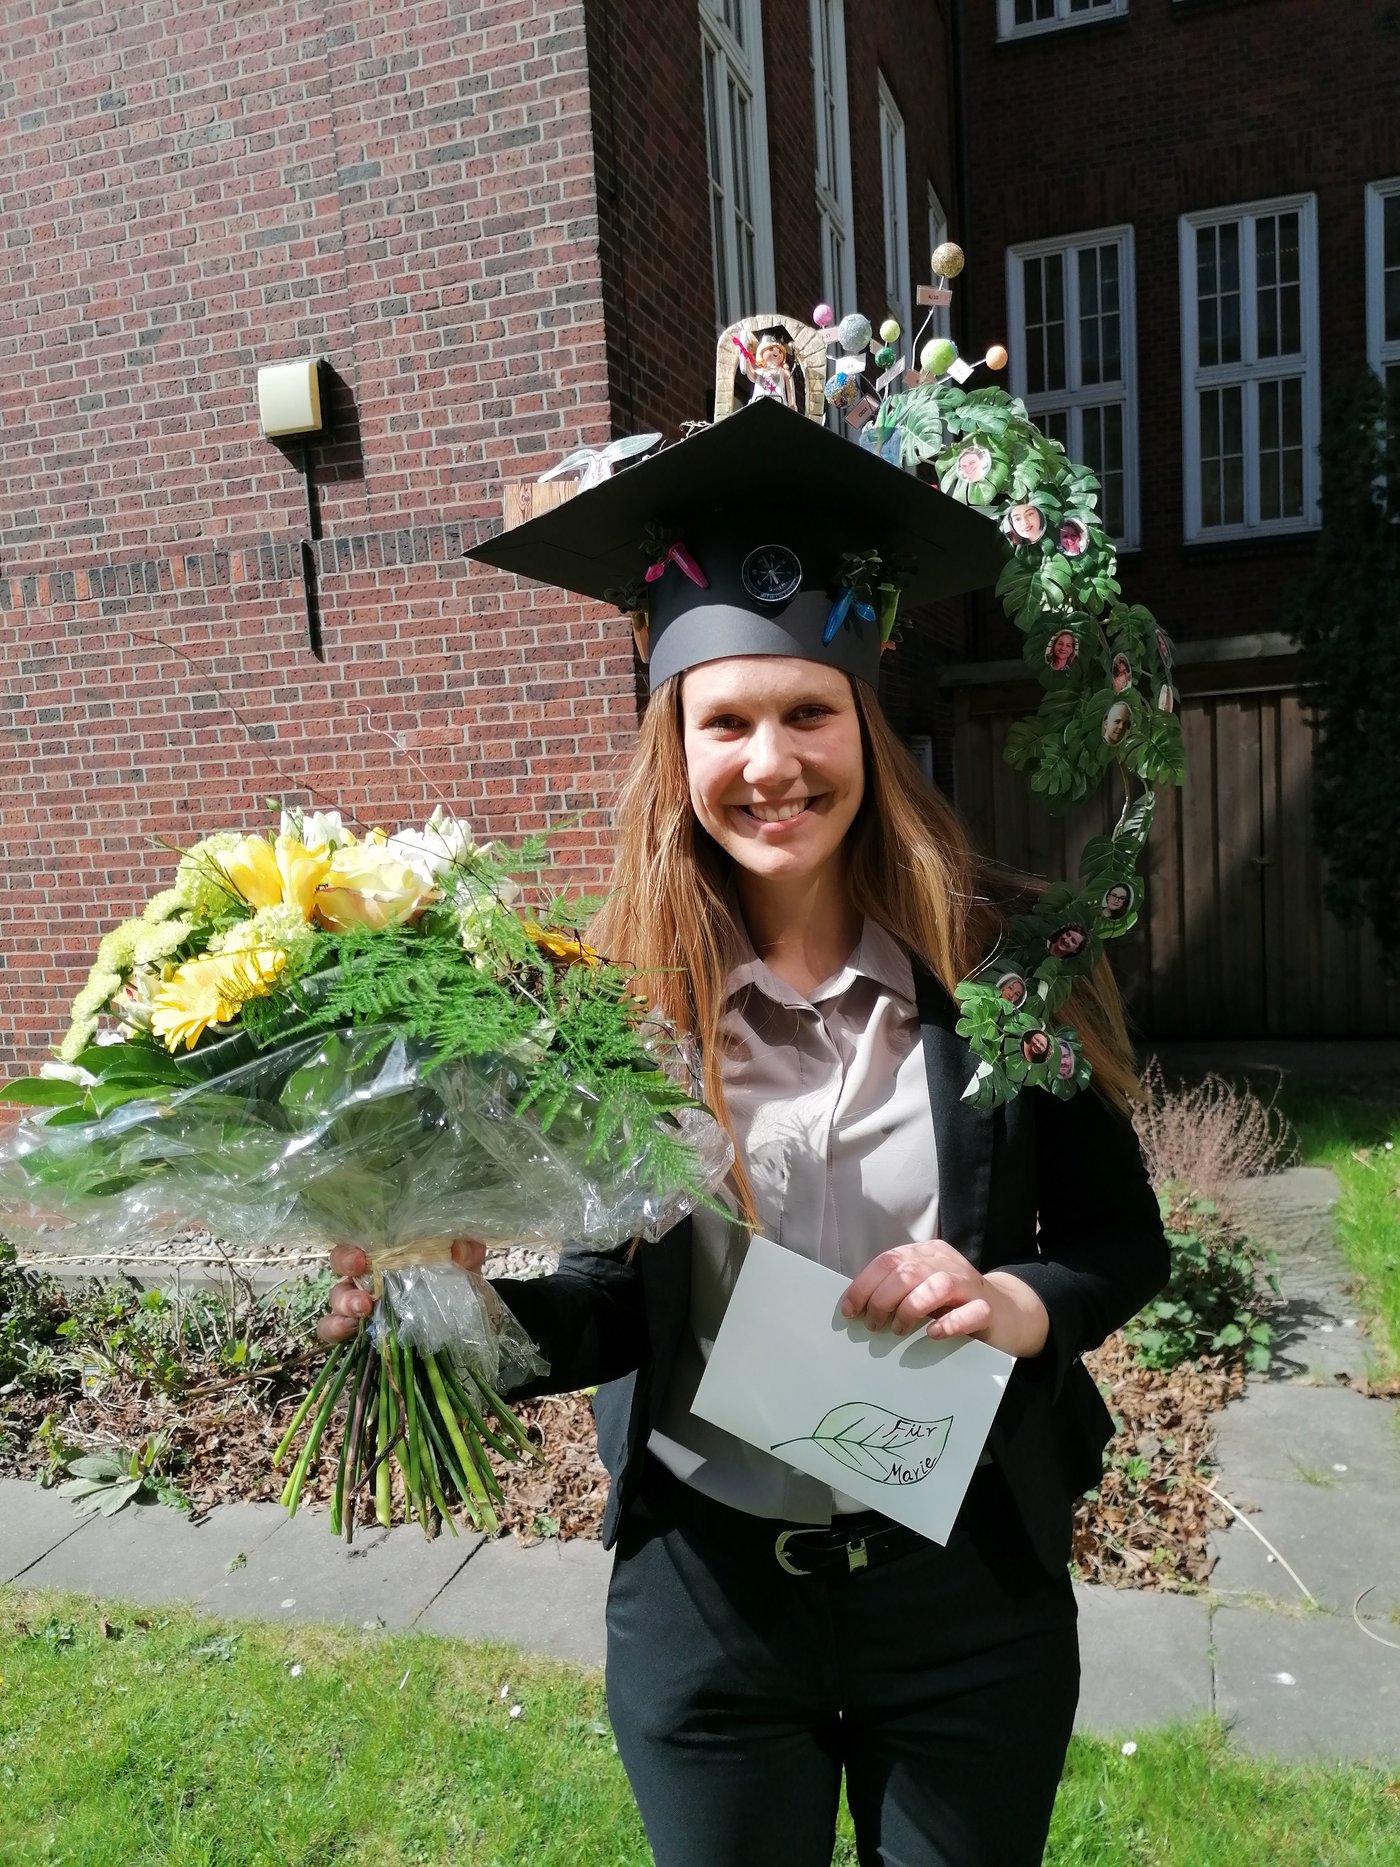 Marie Groneberg kurz nach der Dissertation. Sie trägt einen selbstgebastelten, bunten Doktorhut auf dem Kopf, in der rechten Hand einen großen Blumenstrauß und in der linken Hand ein Urkunde.